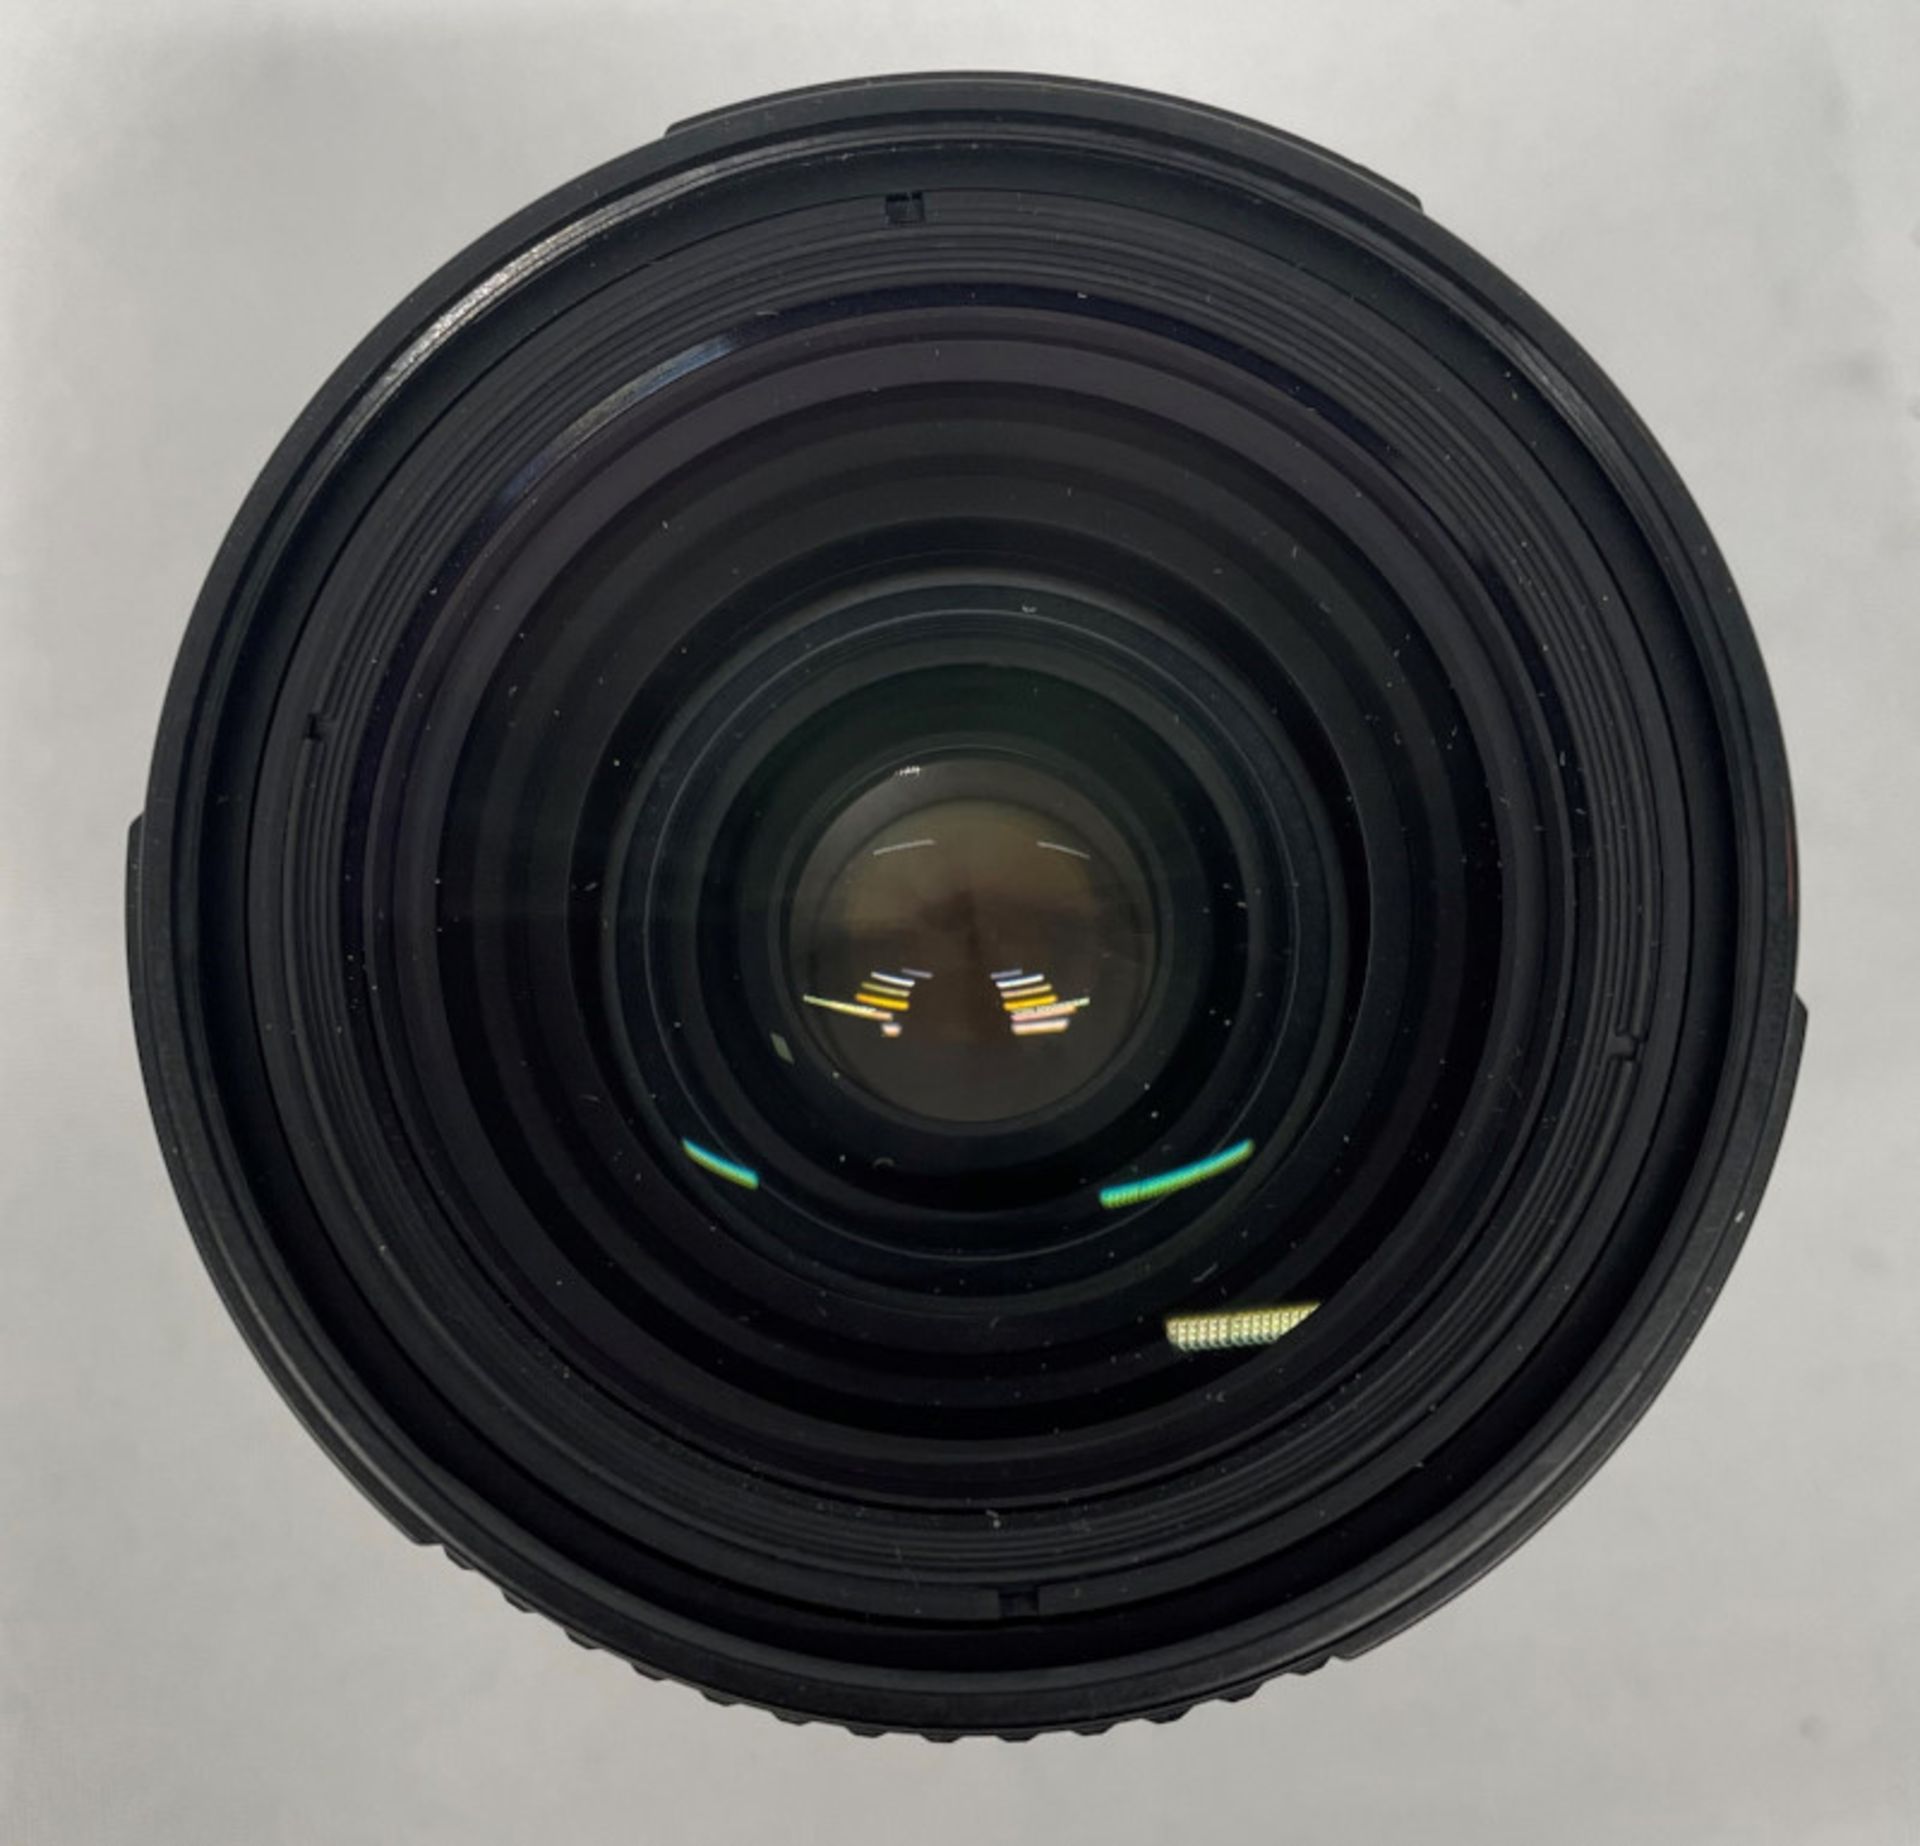 Nikon AF Nikkor 28-85mm - 1:3.5-4.5 Lens - Serial No. 3214498 with HOYA 62mm UV(O) Filter - Image 4 of 7